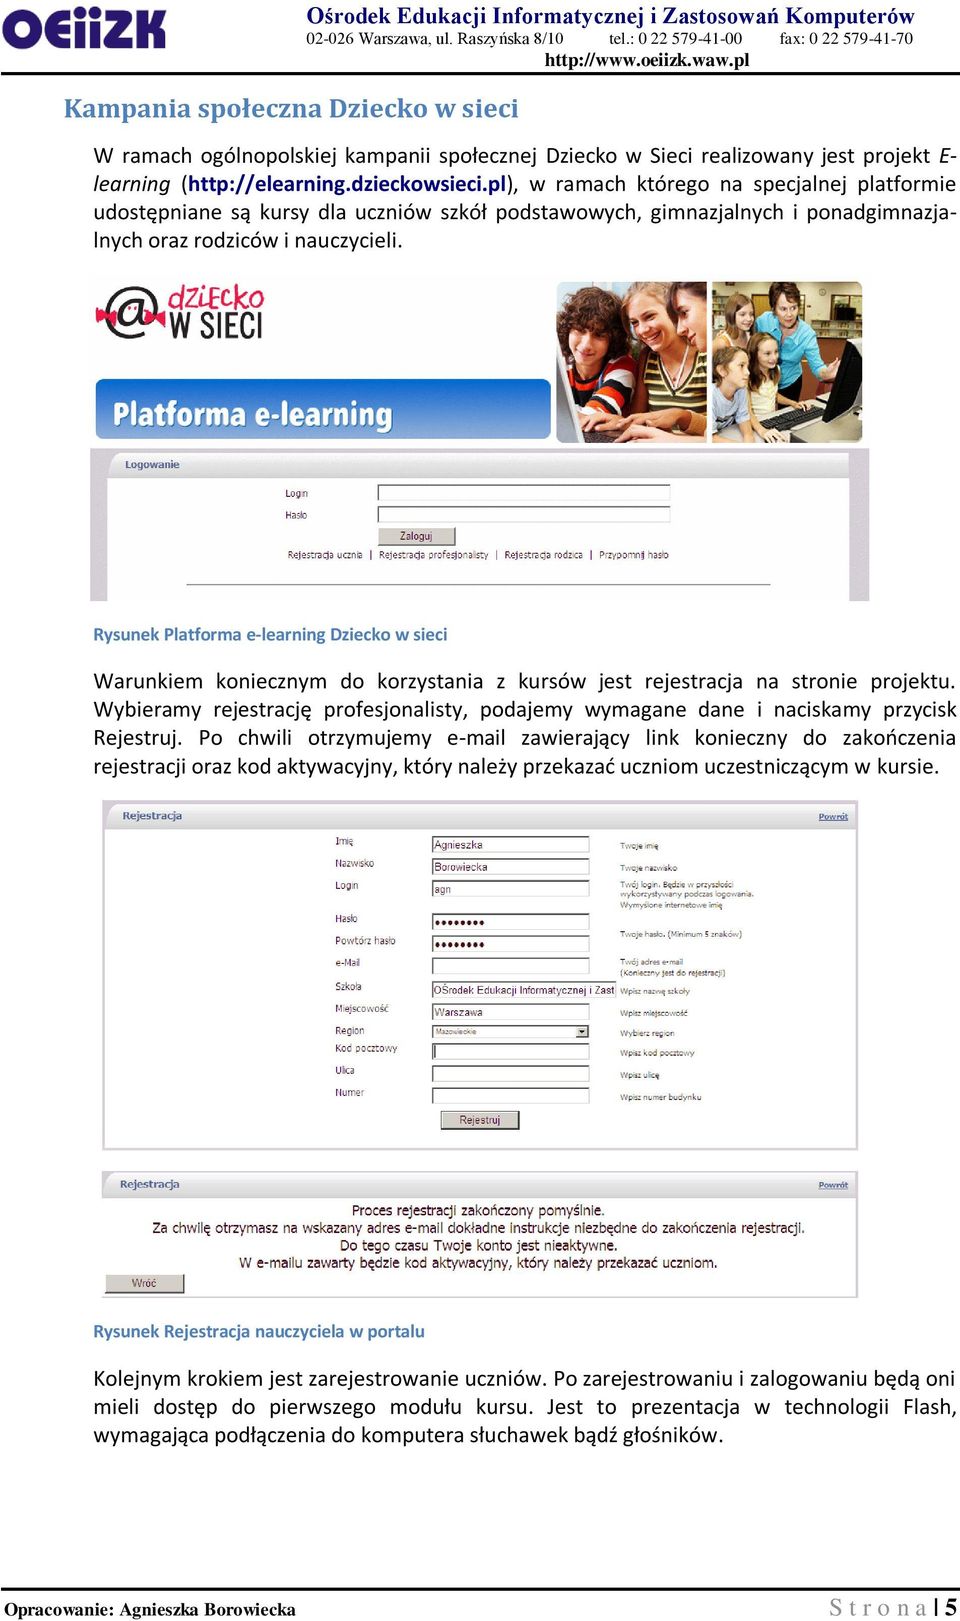 Rysunek Platforma e-learning Dziecko w sieci Warunkiem koniecznym do korzystania z kursów jest rejestracja na stronie projektu.